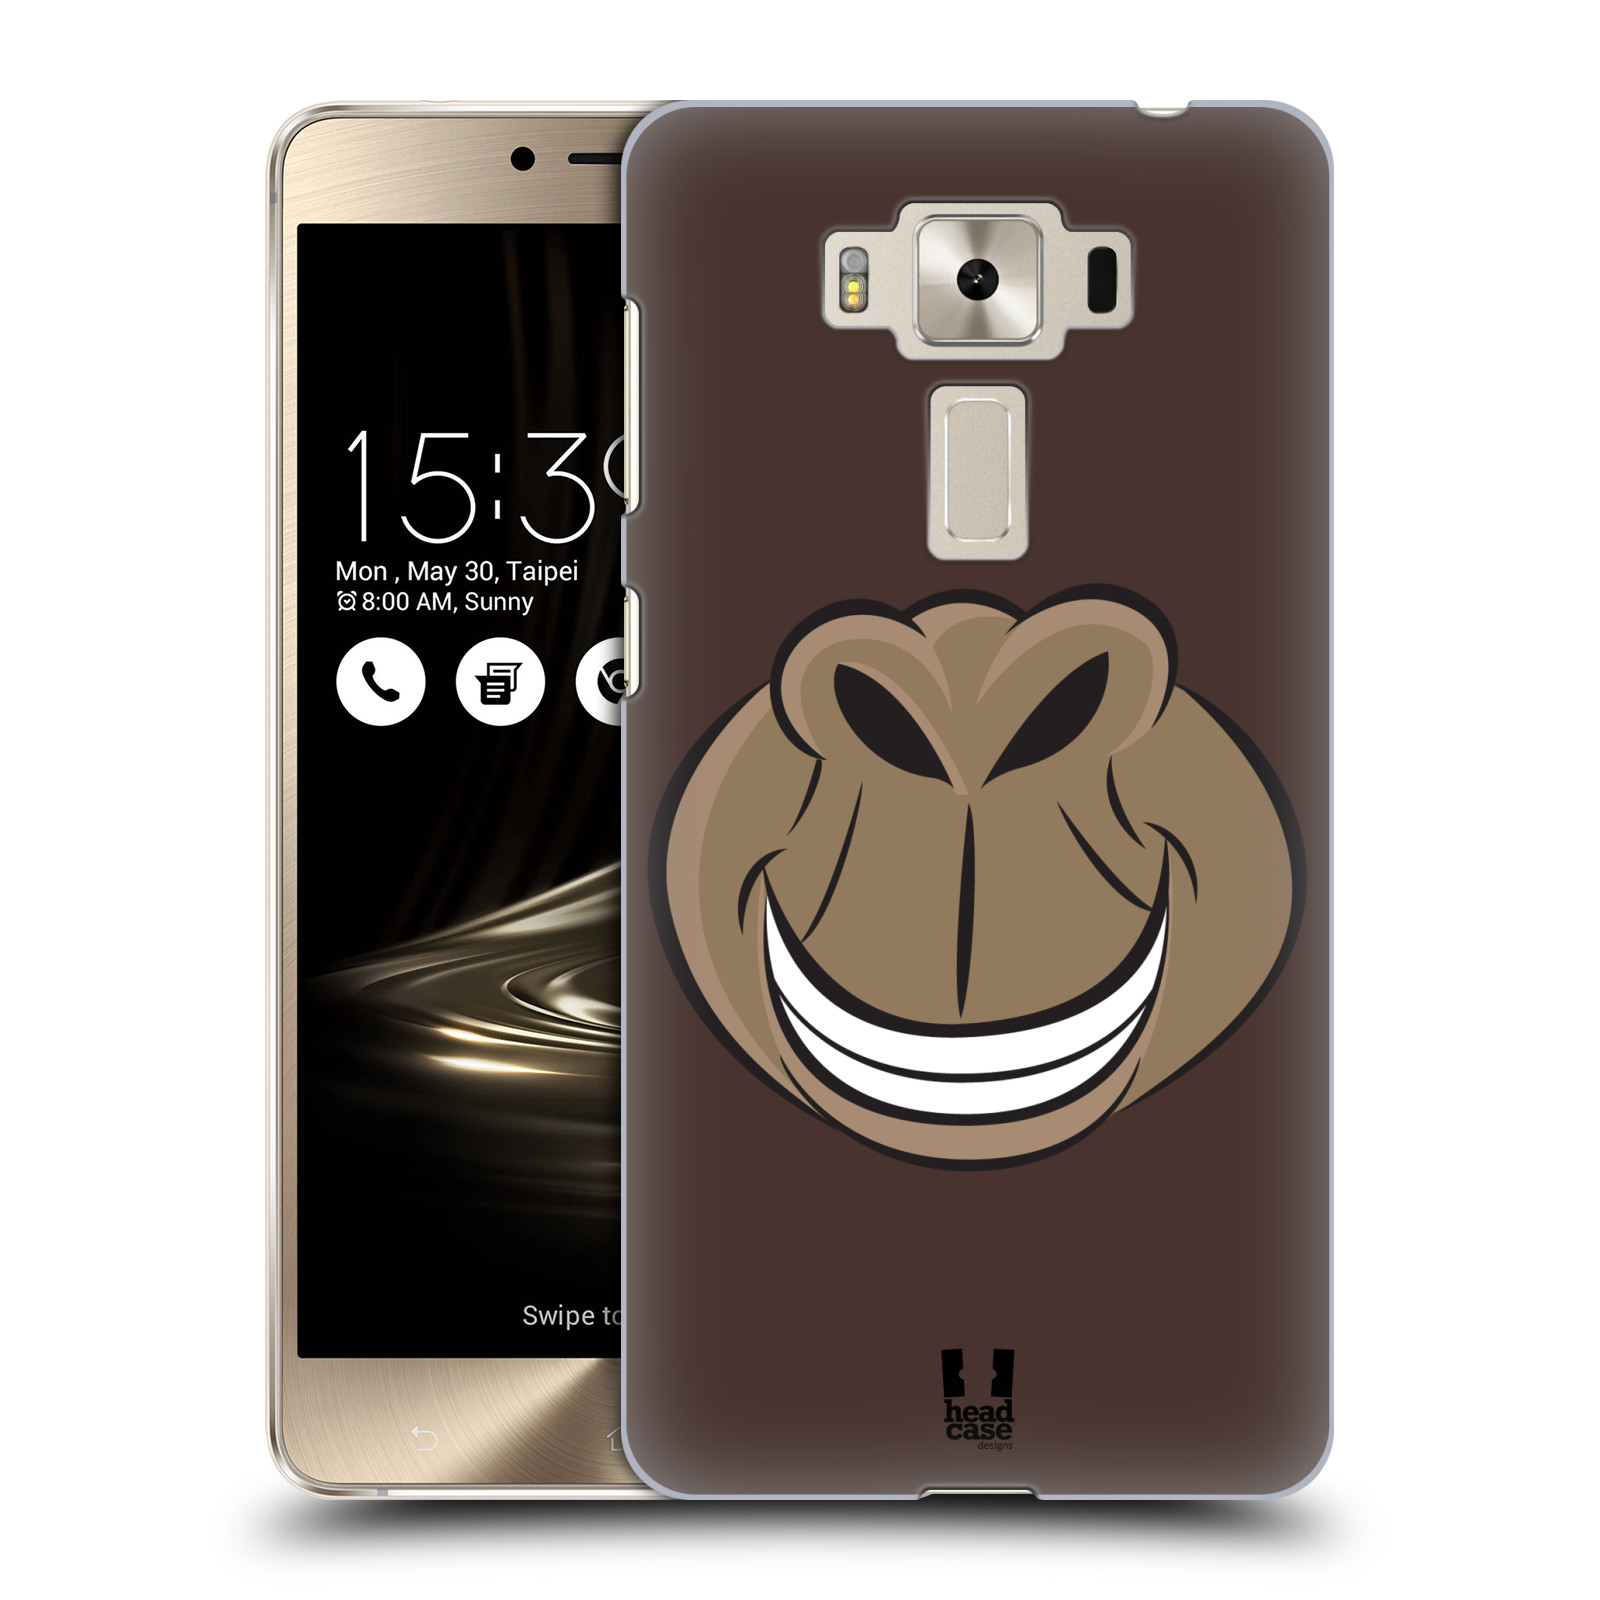 HEAD CASE plastový obal na mobil Asus Zenfone 3 DELUXE ZS550KL vzor Zvířecí úsměv opice hnědá